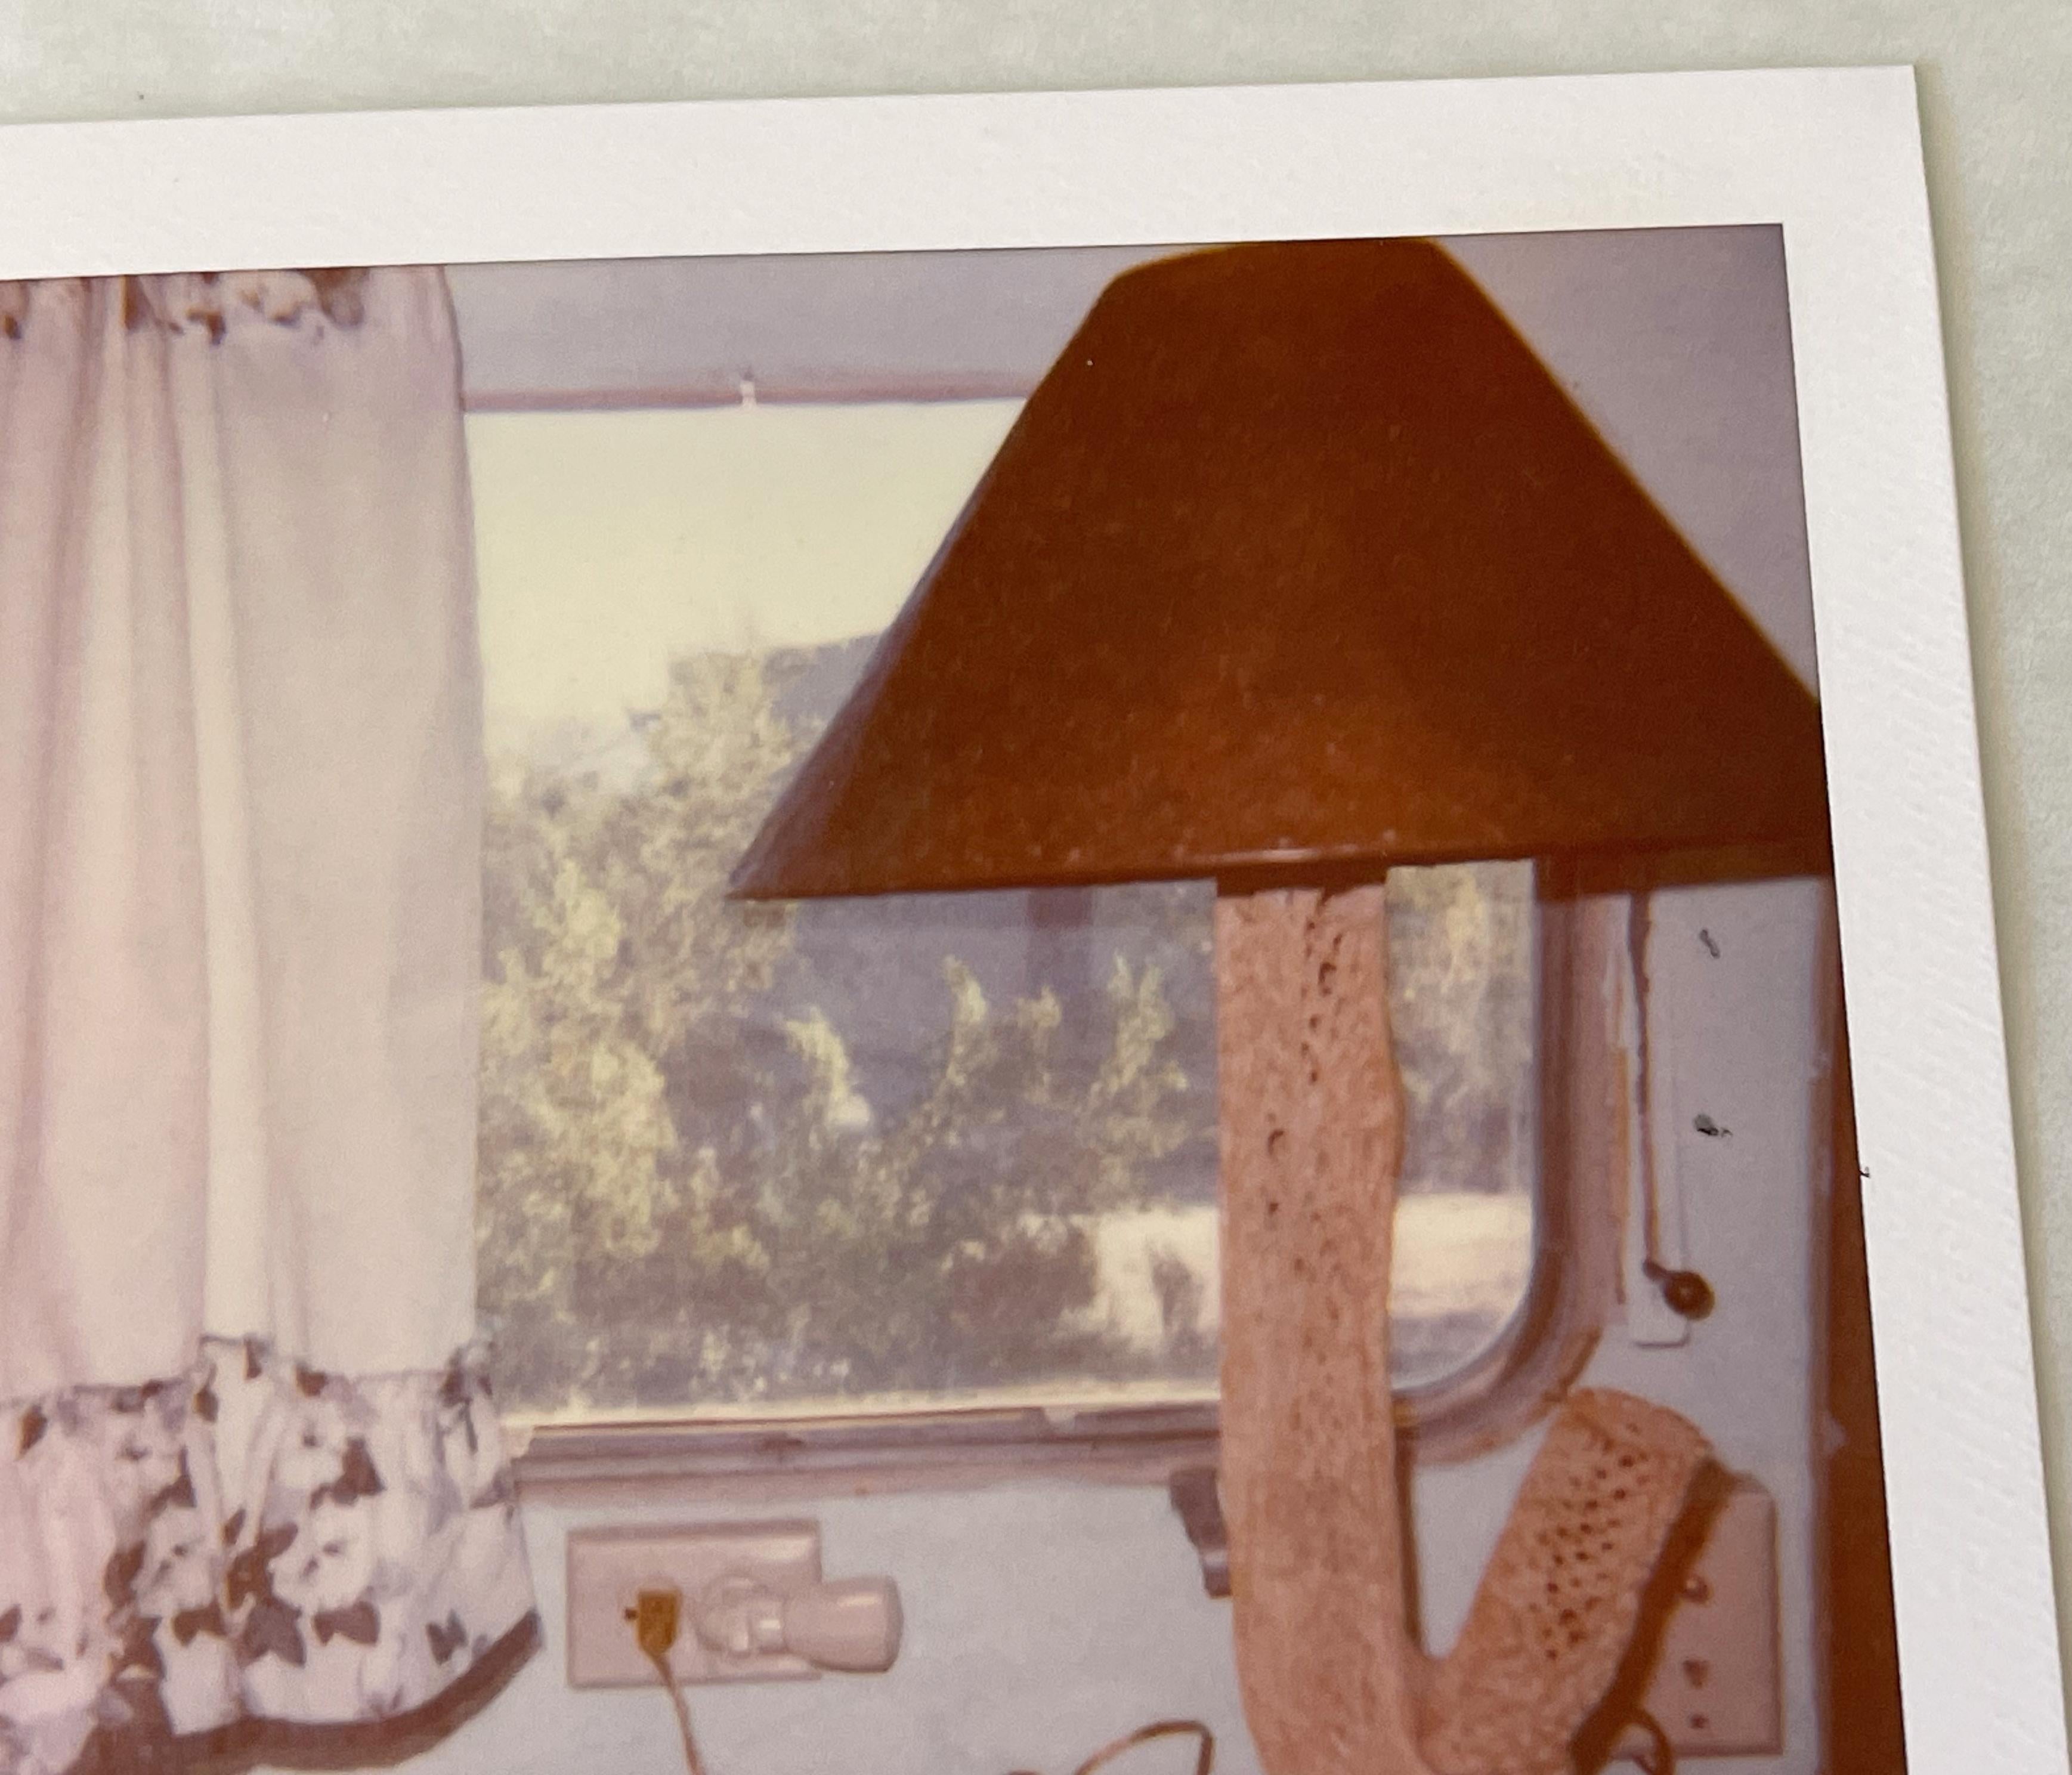 La lampe (Sidewinder) - 2006

Polaroid - Pièce unique 1/1, 
8,8 x 7,5 cm (zone d'image)
10,6 x 8,6 cm (y compris le cadre Polaroid blanc)
Inv. d'artiste #23637. 
Signé au verso. 
Non monté. 

Les situations scintillantes de Stefanie Schneider se